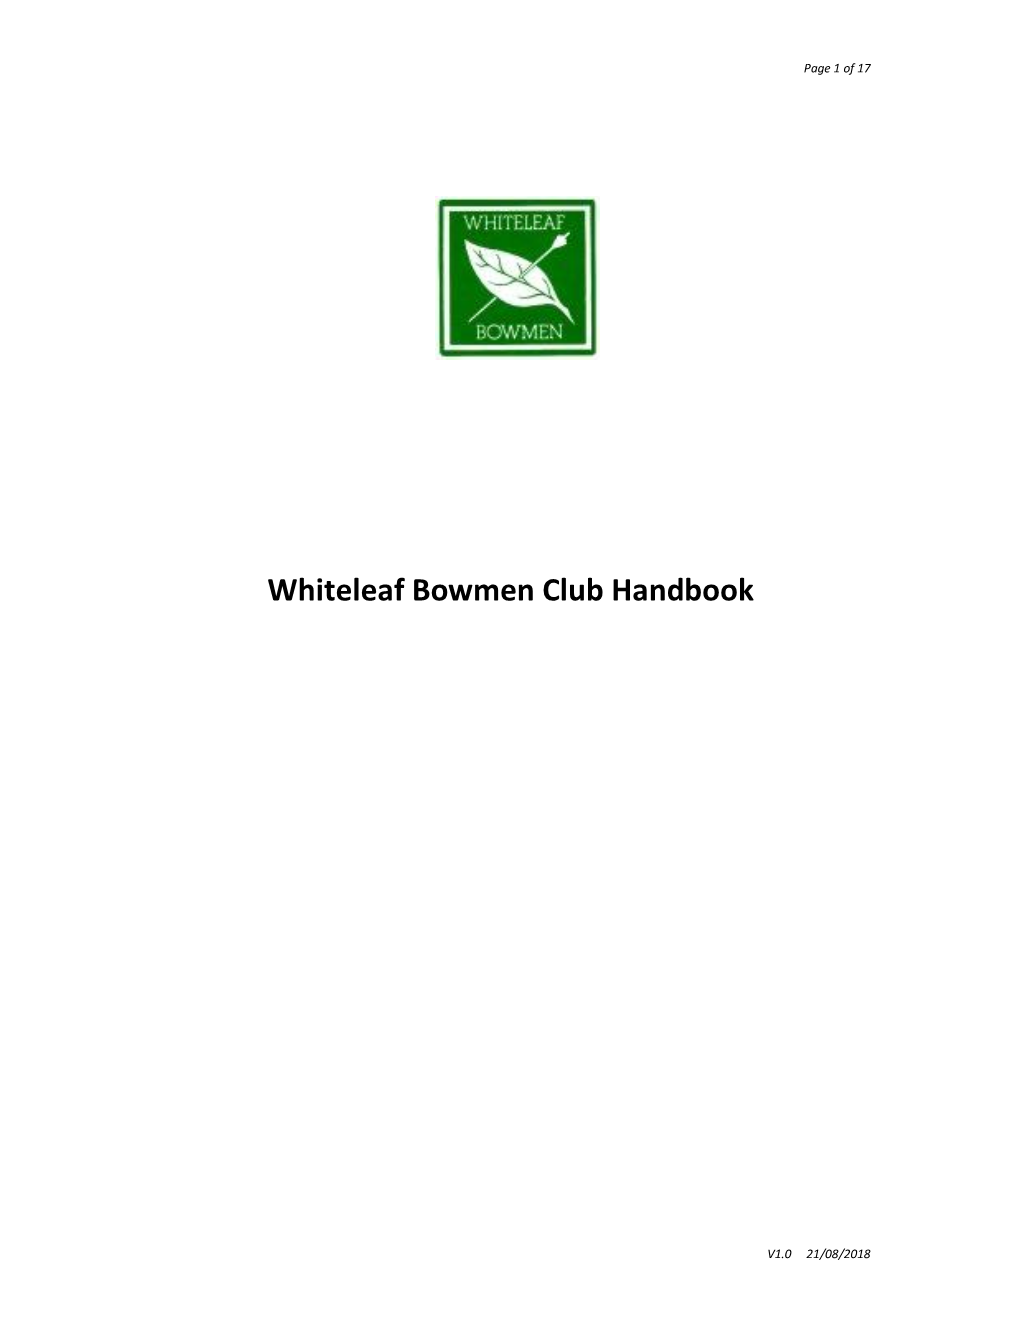 Whiteleaf Bowmen Club Handbook